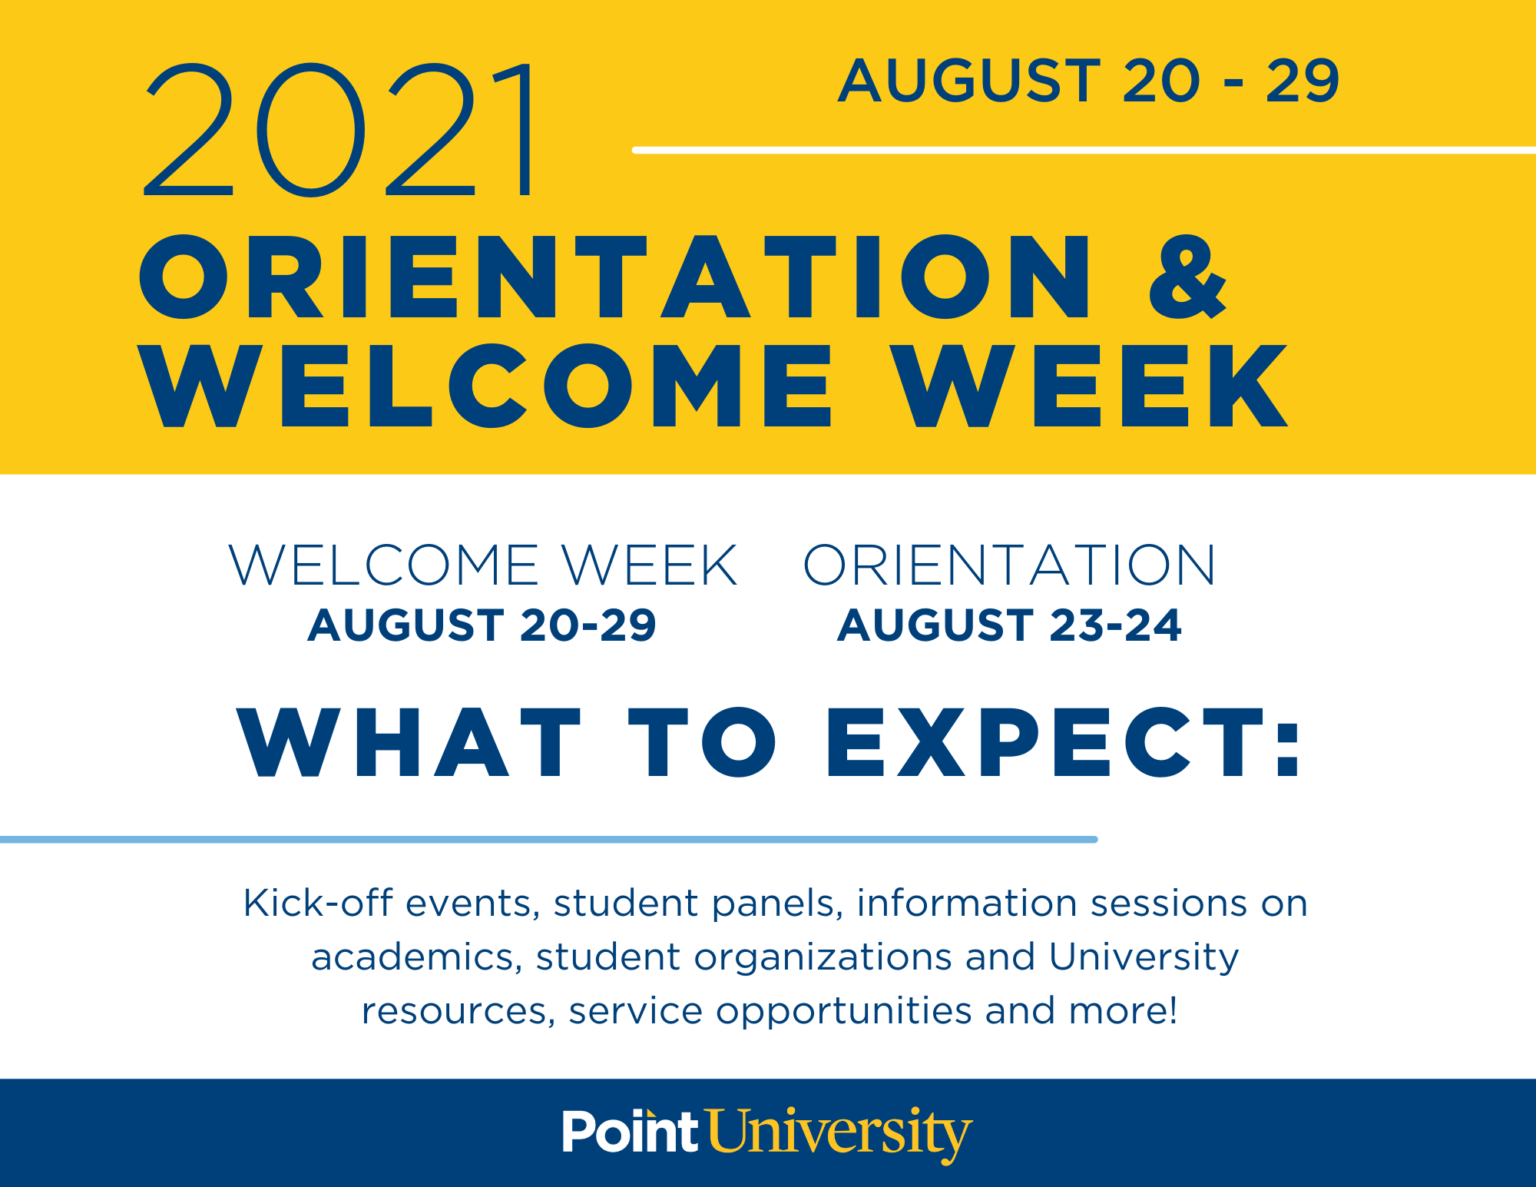 Orientation Schedule - Point University